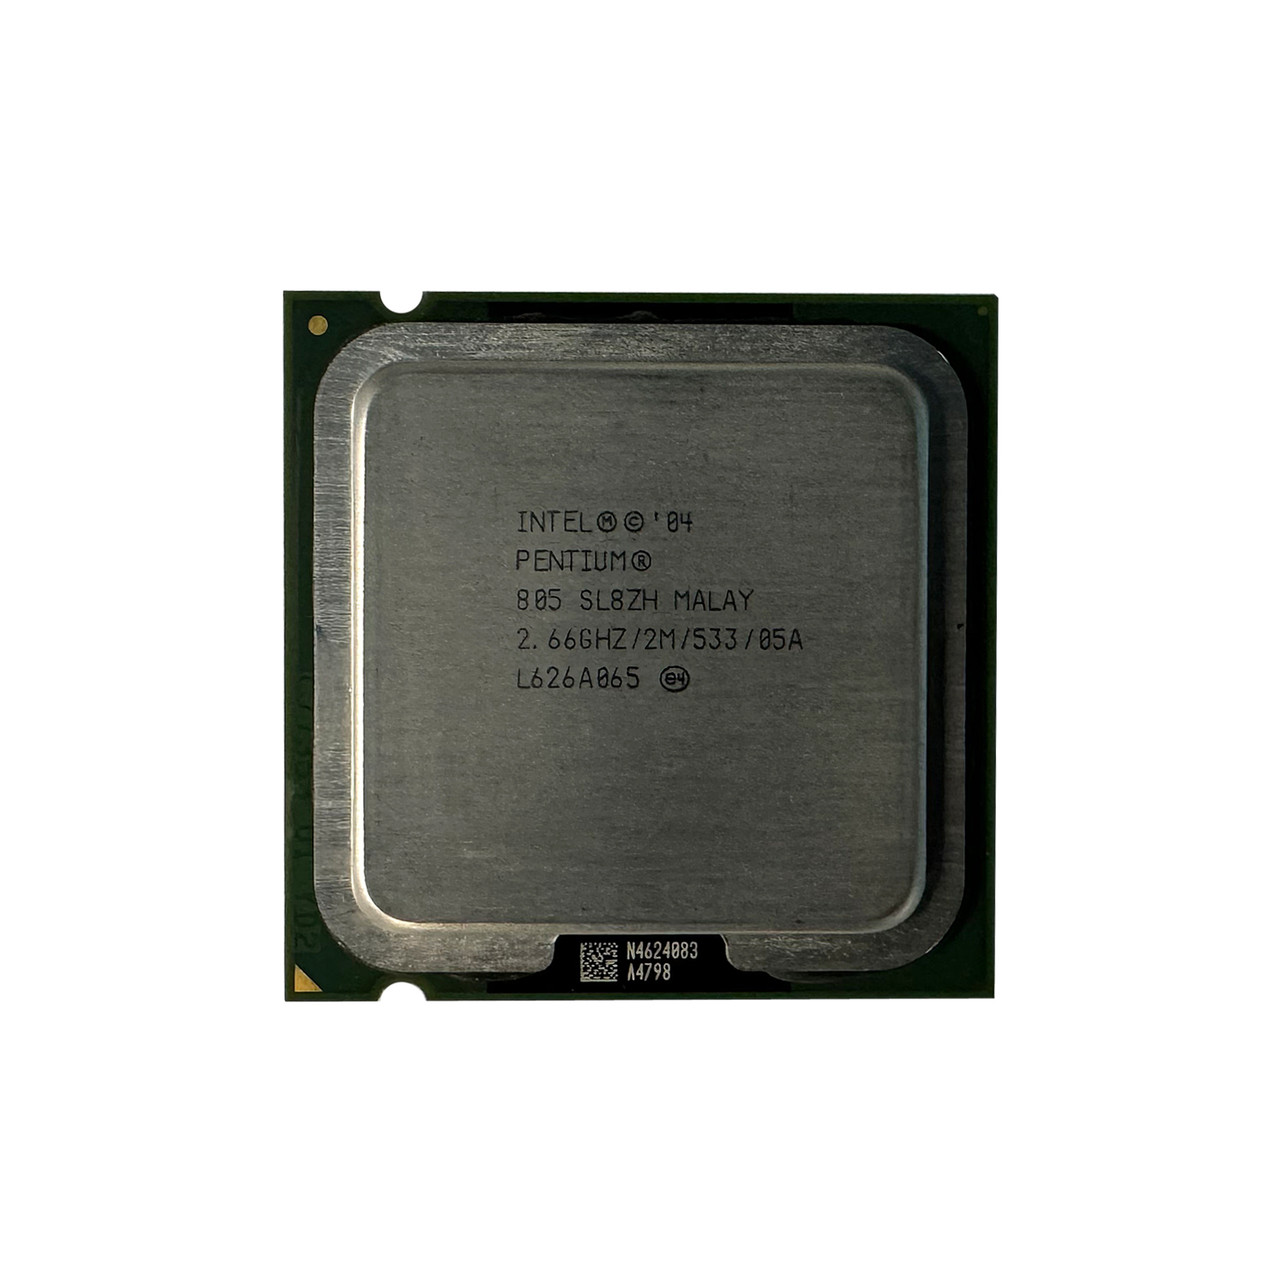 Intel SL8ZH Pentium D 805 DC 2.66GHz 2MB 533FSB Processor